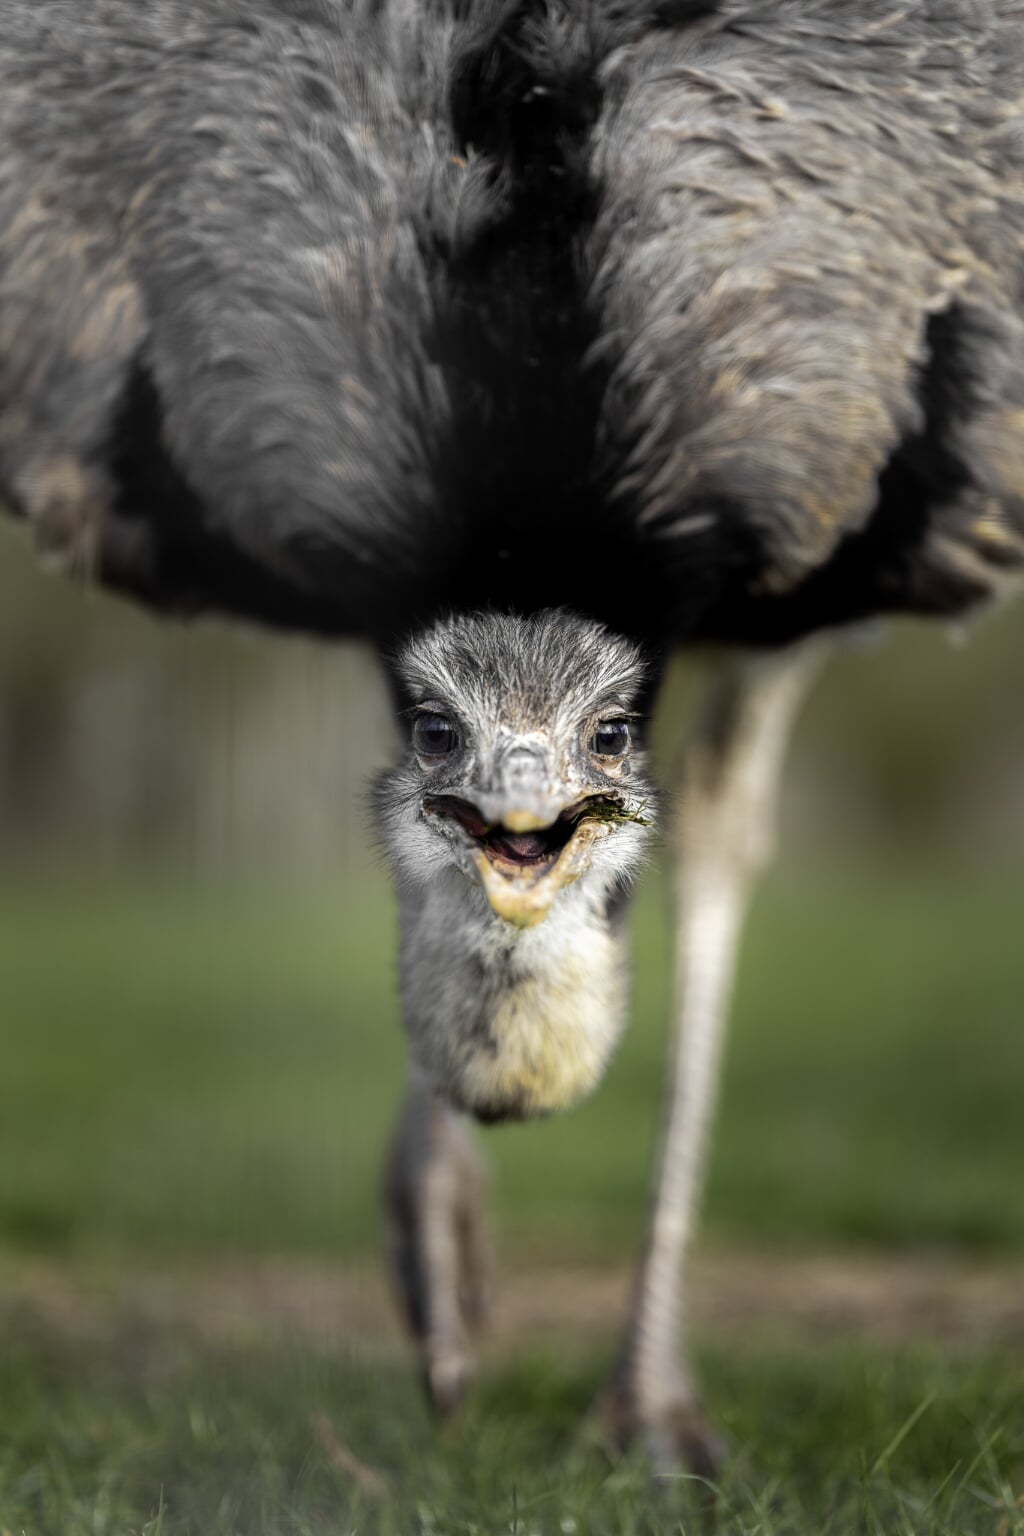 De struisvogel van Jessimo Coeymans. De best beoordeelde foto van opdracht 1.